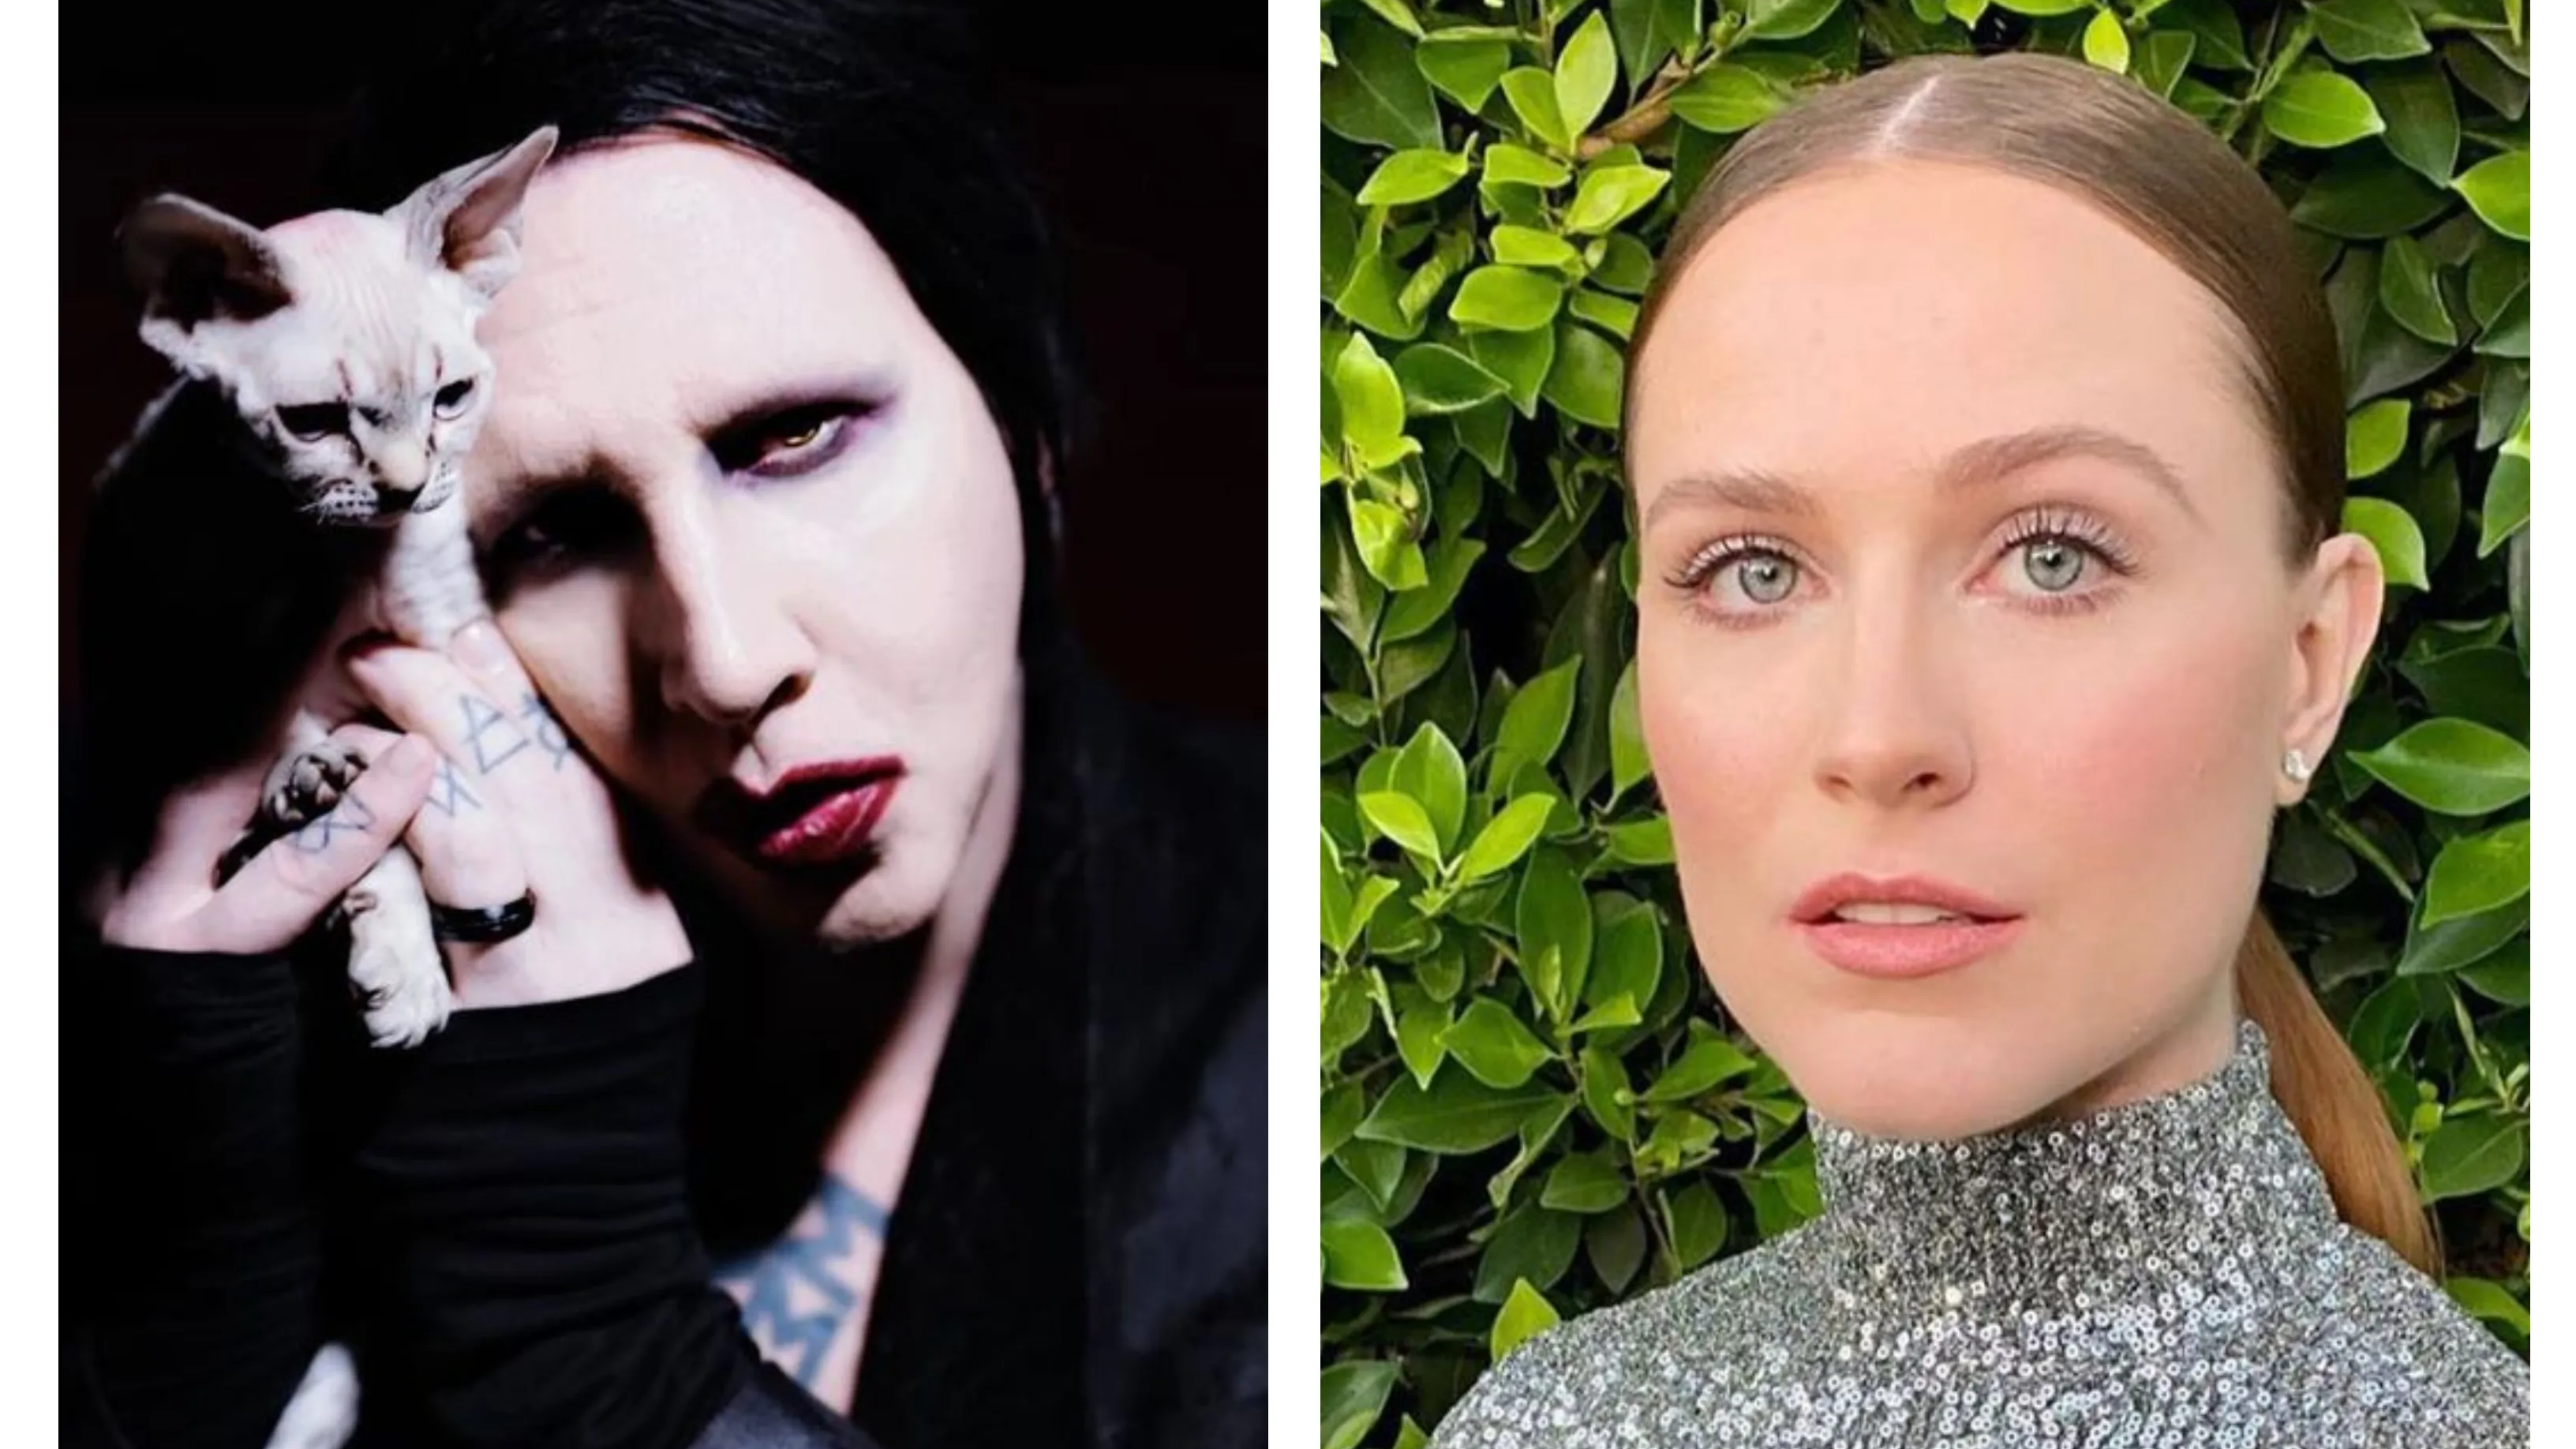 ‘Dangerous man’: Actor Evan Rachel Wood accuses Marilyn Manson of years of abuse